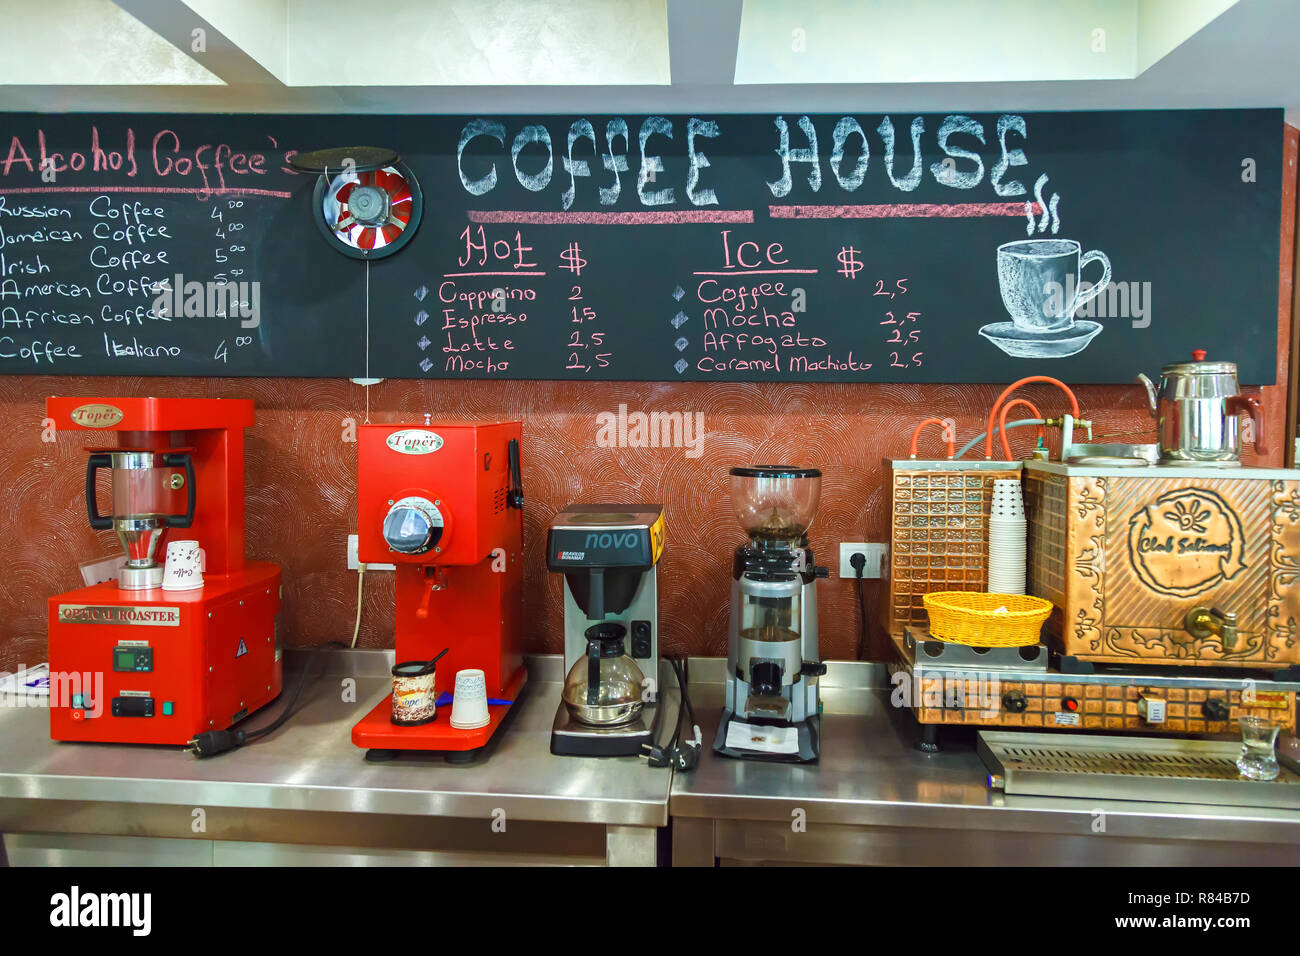 CAFEQUIPOS  Máquinas para cafeterías, restaurantes, hoteles